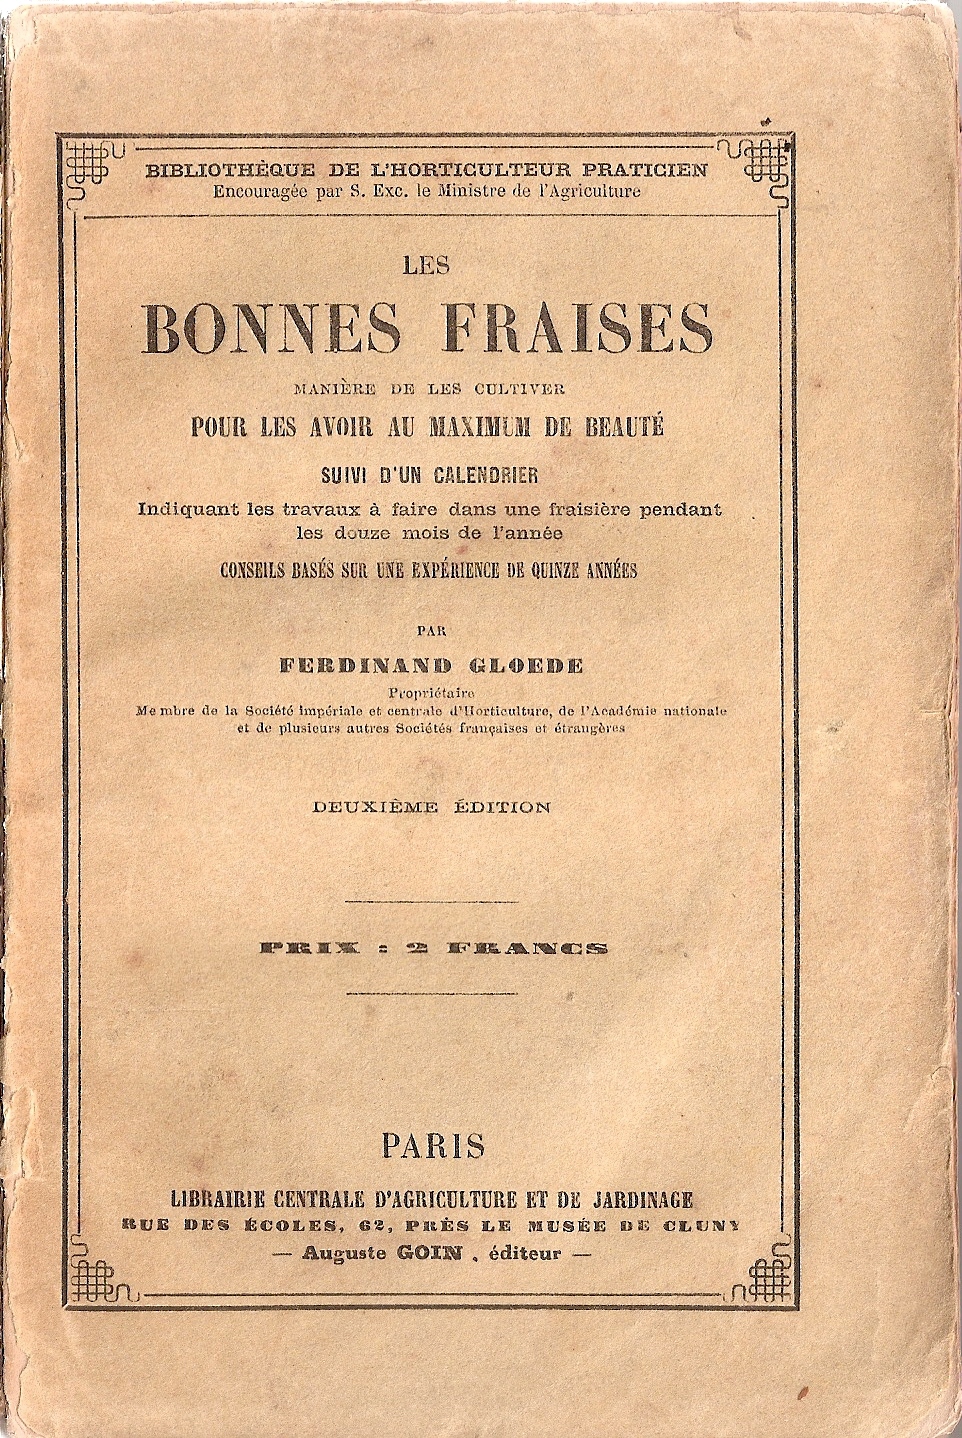 Barratt-Gloede, Ferdinand-Les Bonnes fraises-1870-Paris-